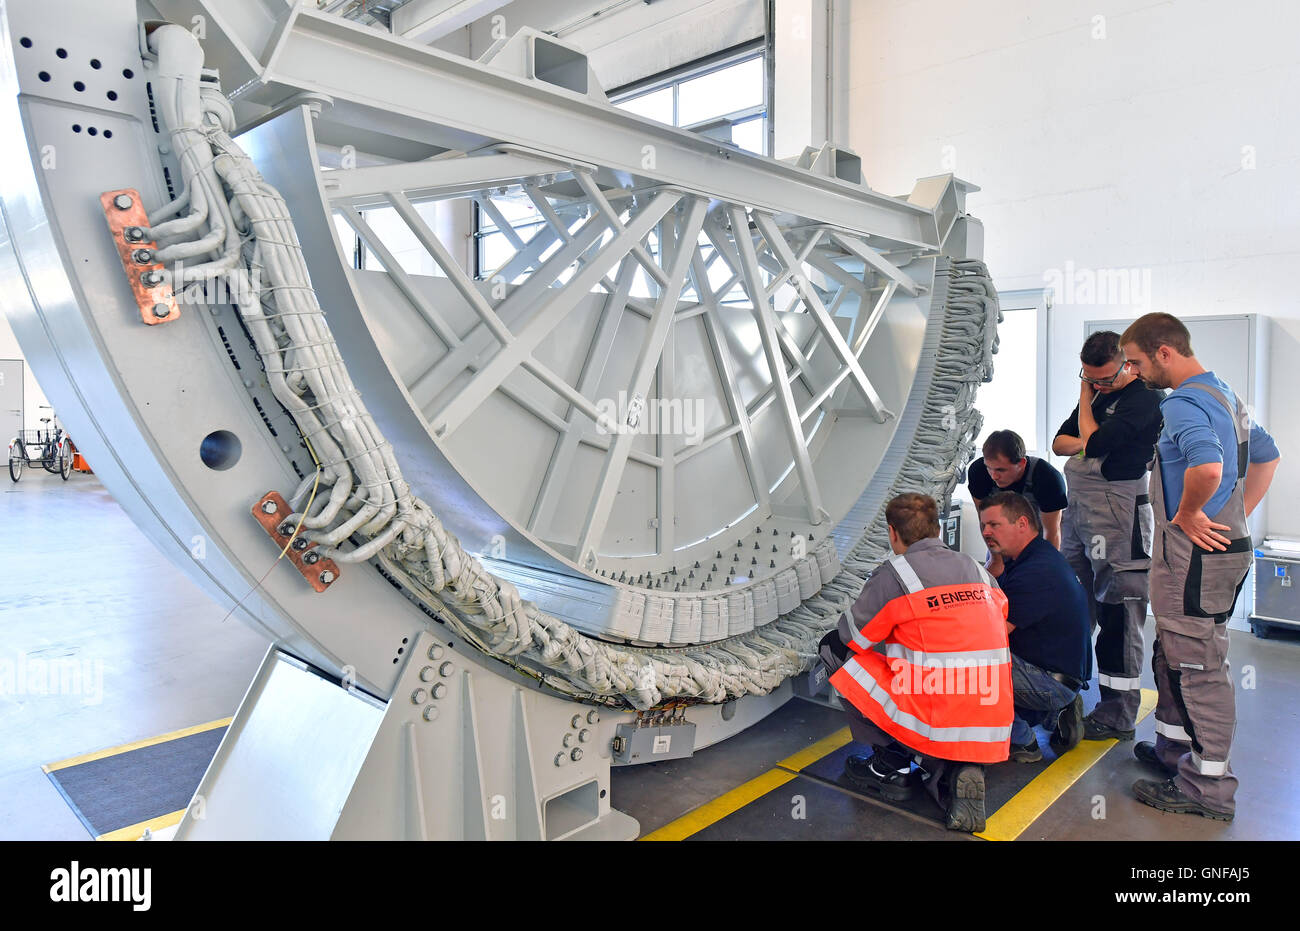 Gotha, Germania. Il 30 agosto, 2016. I dipendenti della Enercon Service Center sono addestrati per la costruzione e la manutenzione di turbine eoliche nel Gotha, Germania, 30 agosto 2016. Secondo l'Istituto delle strutture economiche Resarch (GWS), circa 150.000 persone lavorano nel settore dell'energia eolica in Germania, con 2.400 di loro in Turingia. Secondo il tedesco Wind Energy Association, ci sono circa 750 impianti a energia eolica in operazione in Turingia. Foto: MARTIN SCHUTT/dpa/Alamy Live News Foto Stock